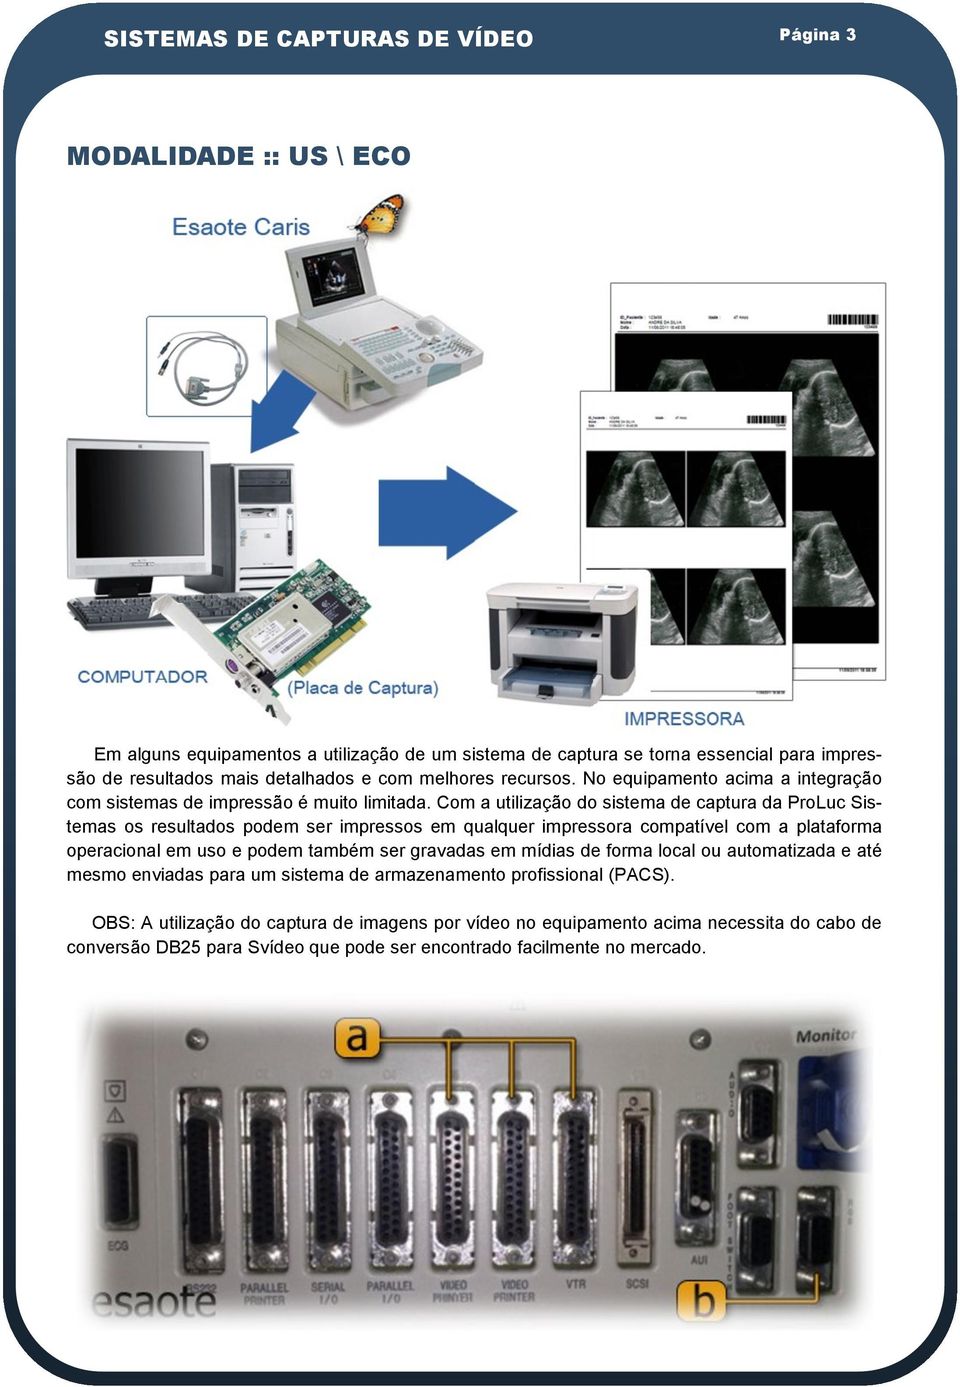 Com a utilização do sistema de captura da ProLuc Sistemas os resultados podem ser impressos em qualquer impressora compatível com a plataforma operacional em uso e podem também ser gravadas em